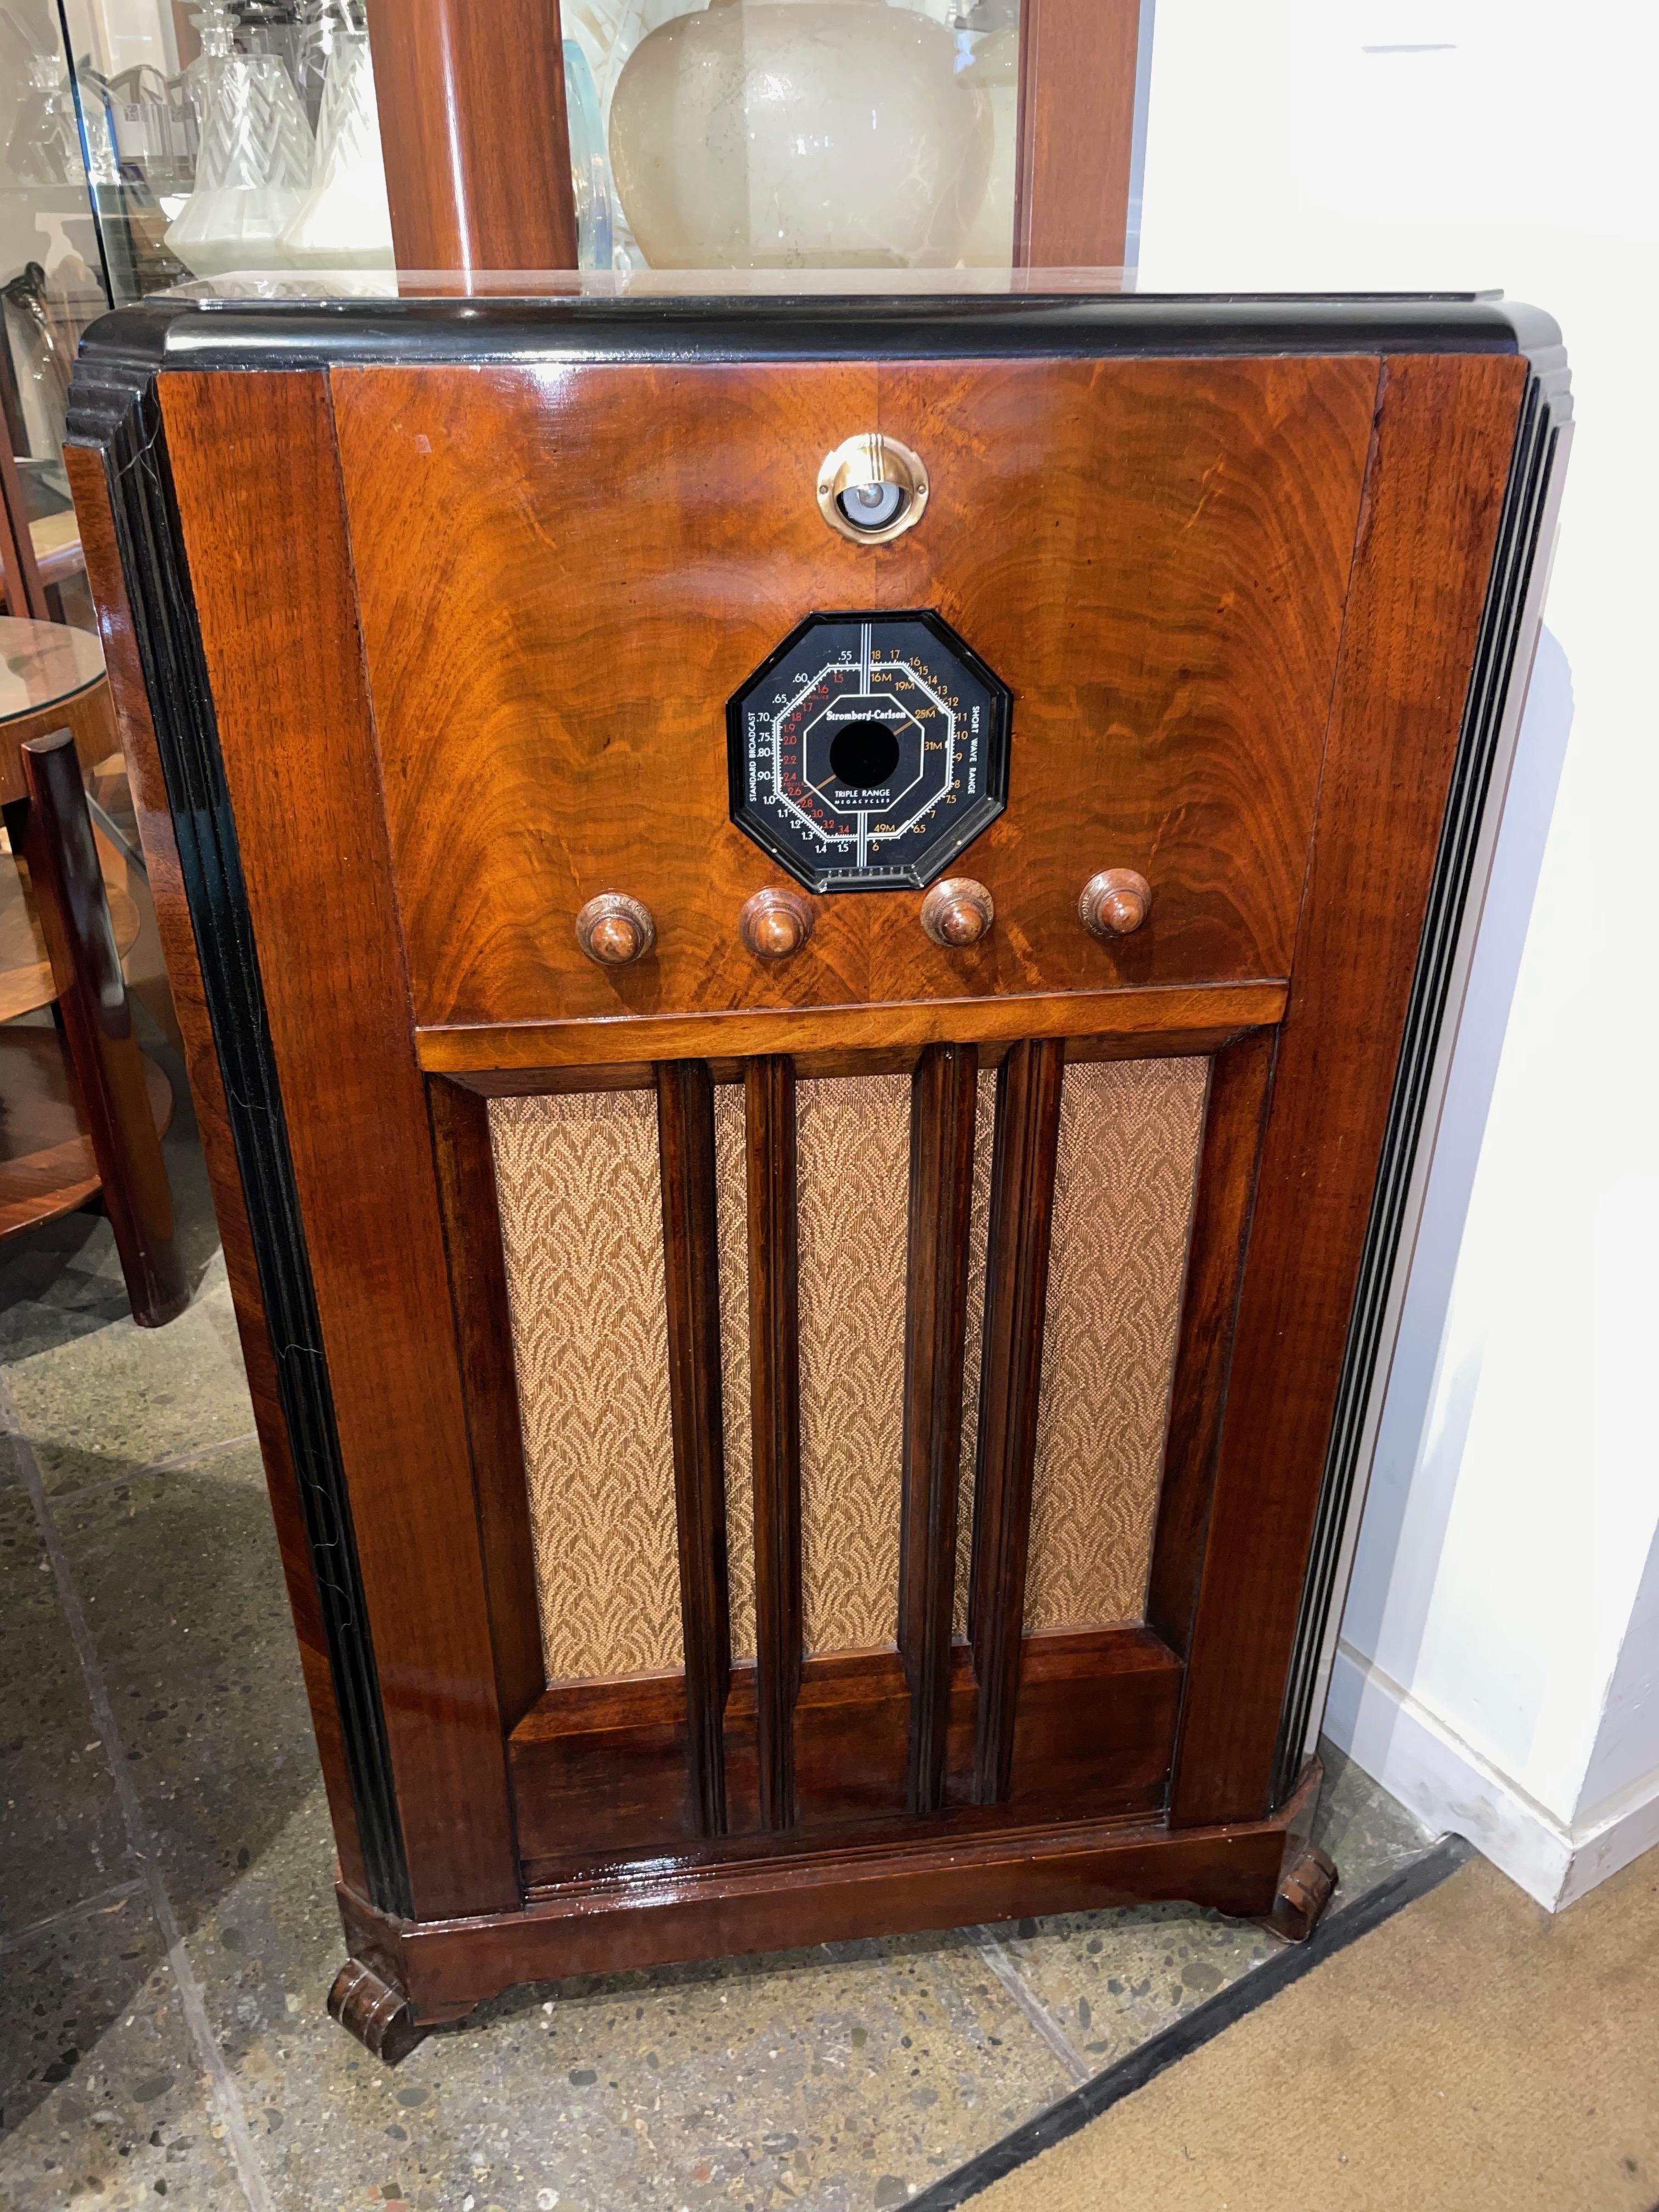 1937 Stromberg-Carlson 228-L Console Radio Restauriert Bluetooth. Stromberg Carlson war für sein Engagement für Qualität bekannt und seine Produkte werden oft als der 